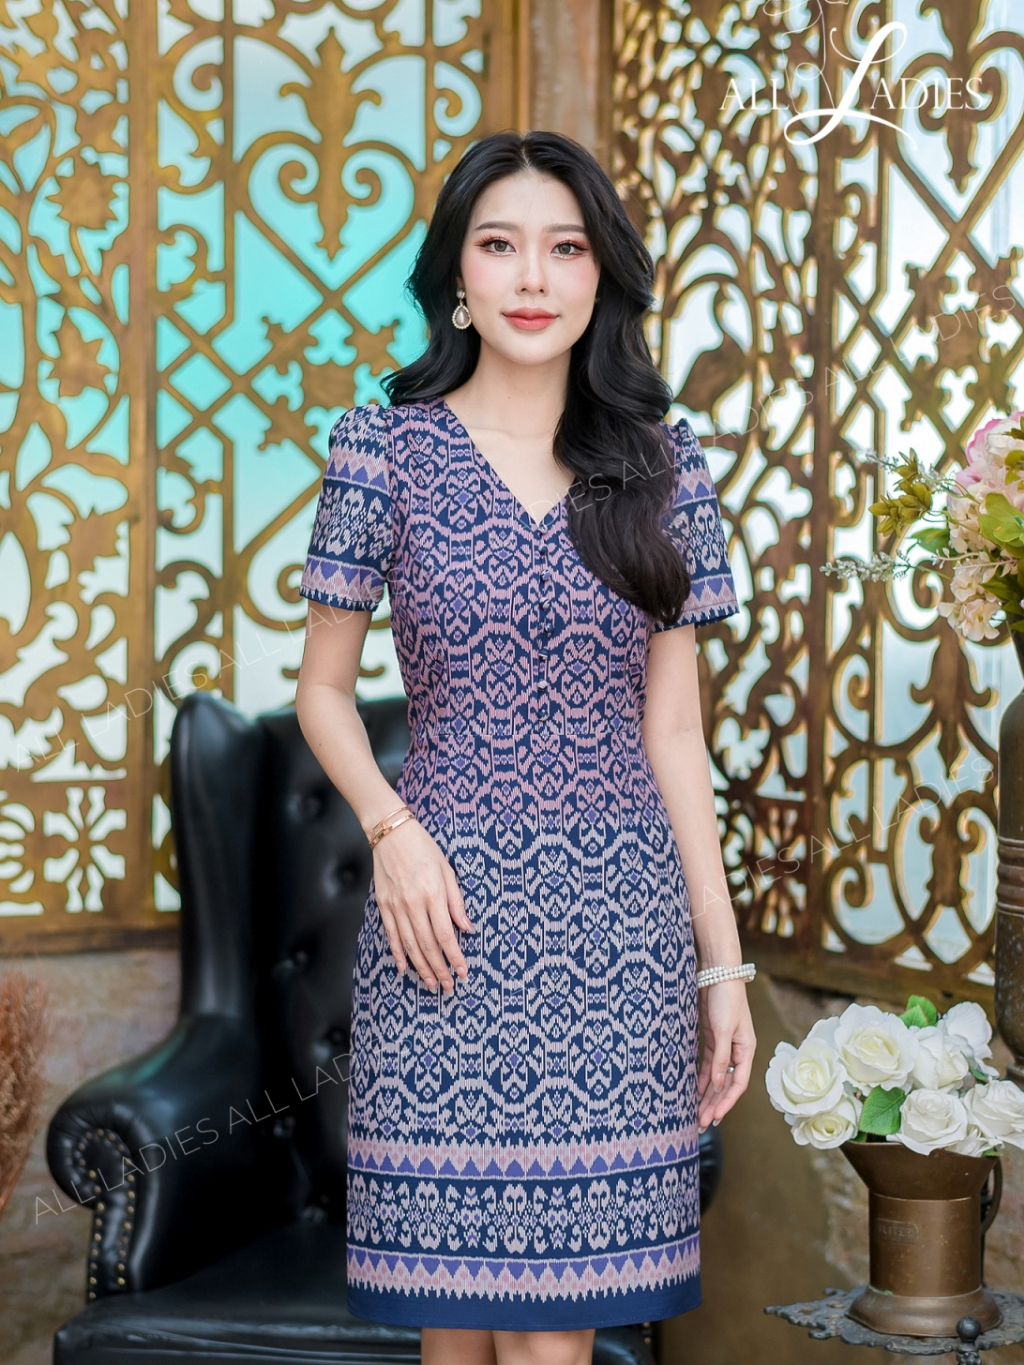 all-ladies-เดรสลายไทย-ผ้าพิมพ์ลายไล่สีออมเบรสวยมาก-ๆ-ทรงสวยใส่ง่ายแพทเทิร์นเข้าทรงสวย-ห้ามพลาดค่ะ